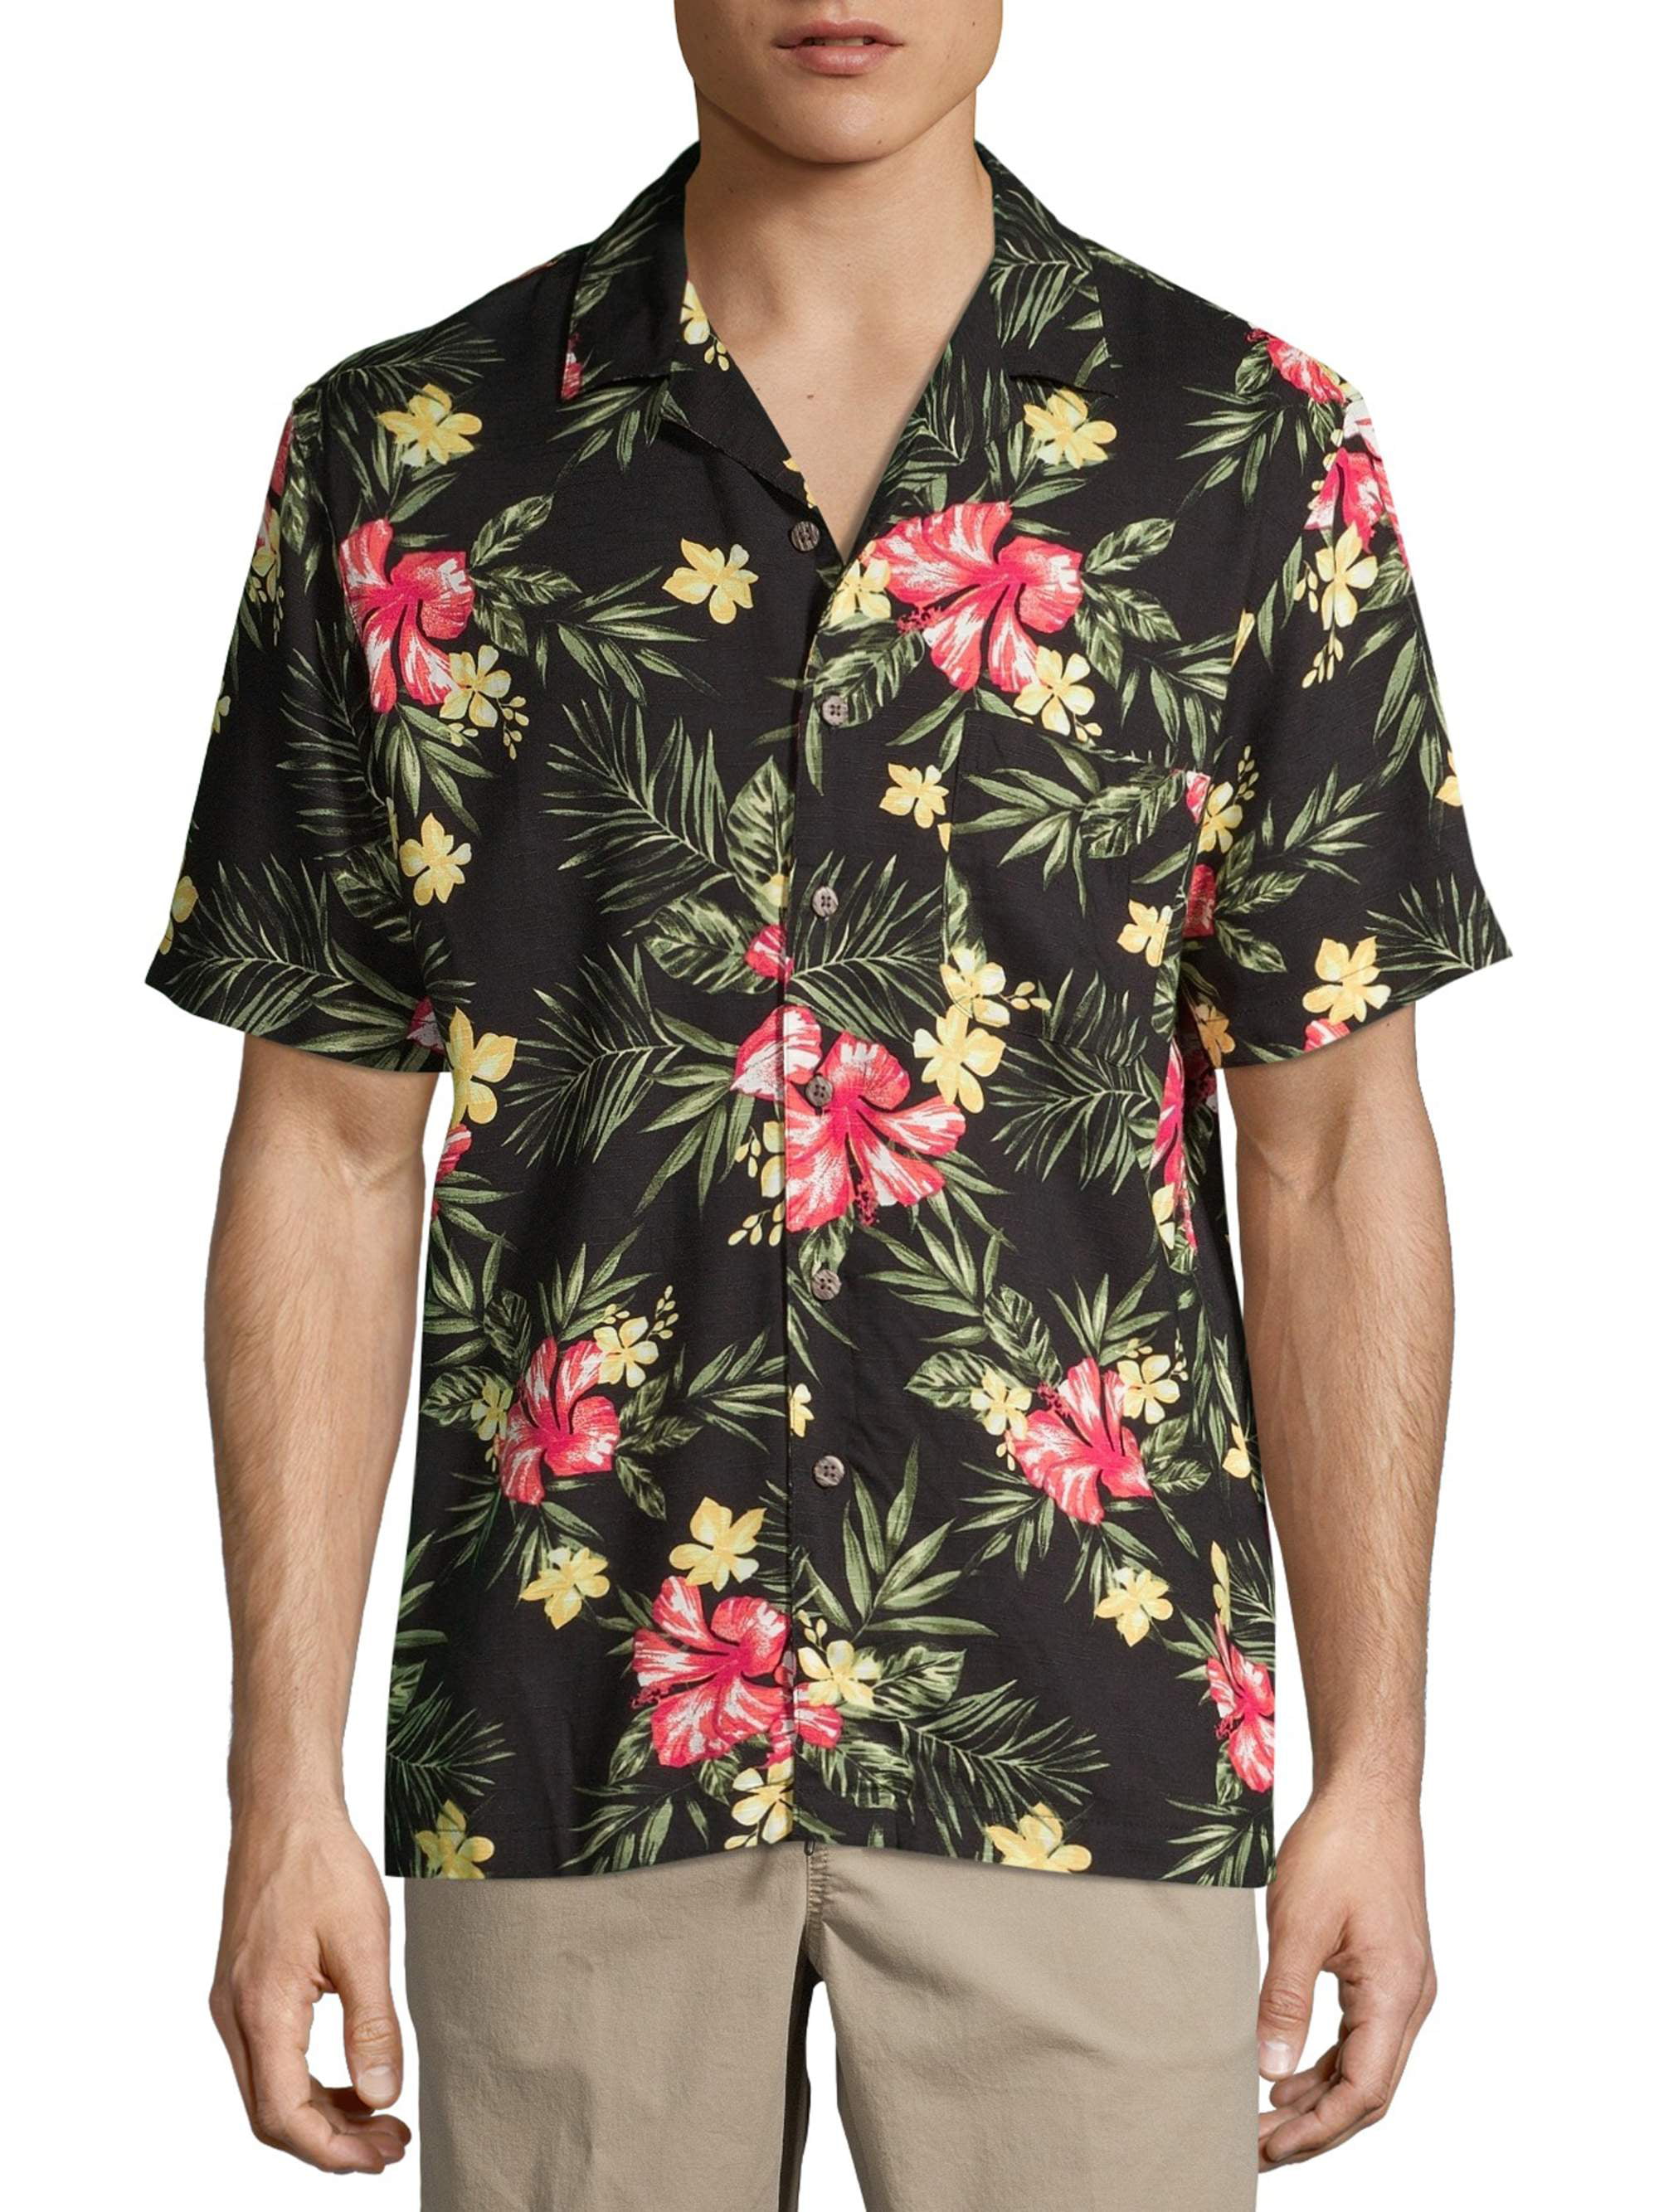 George Men's and Big Men's Short Sleeve Floral Print Shirt - Walmart.com